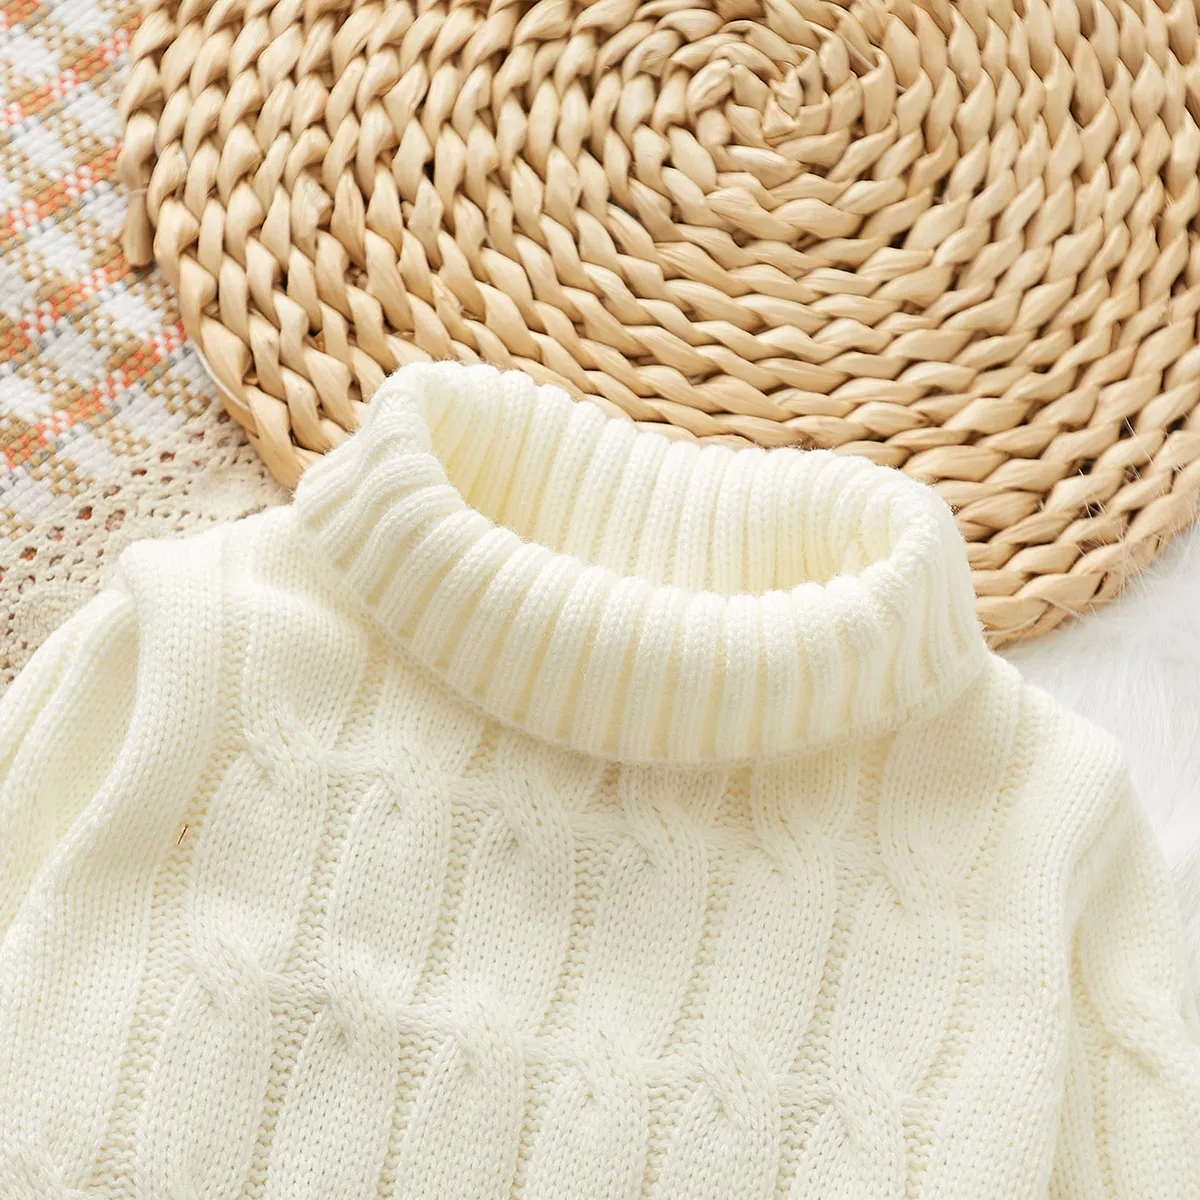 Toddler Boy/Girl Basic Textured Turtleneck Sweater   White big image 1